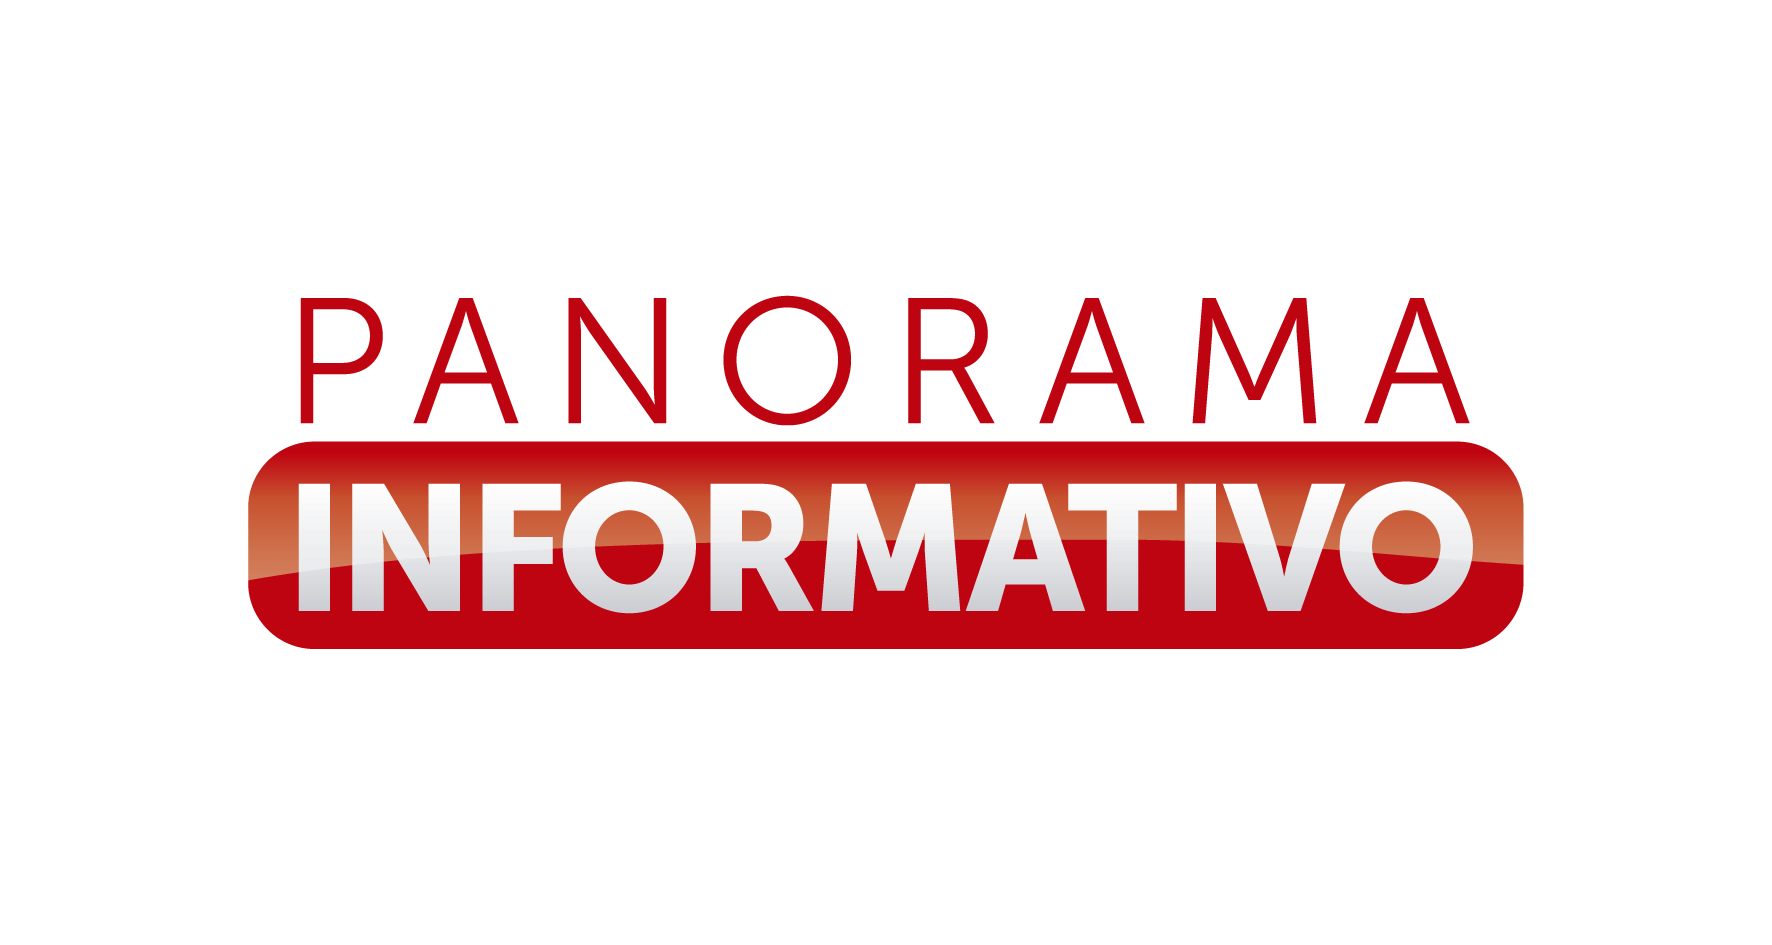 Panorama Informativo – La mejor información